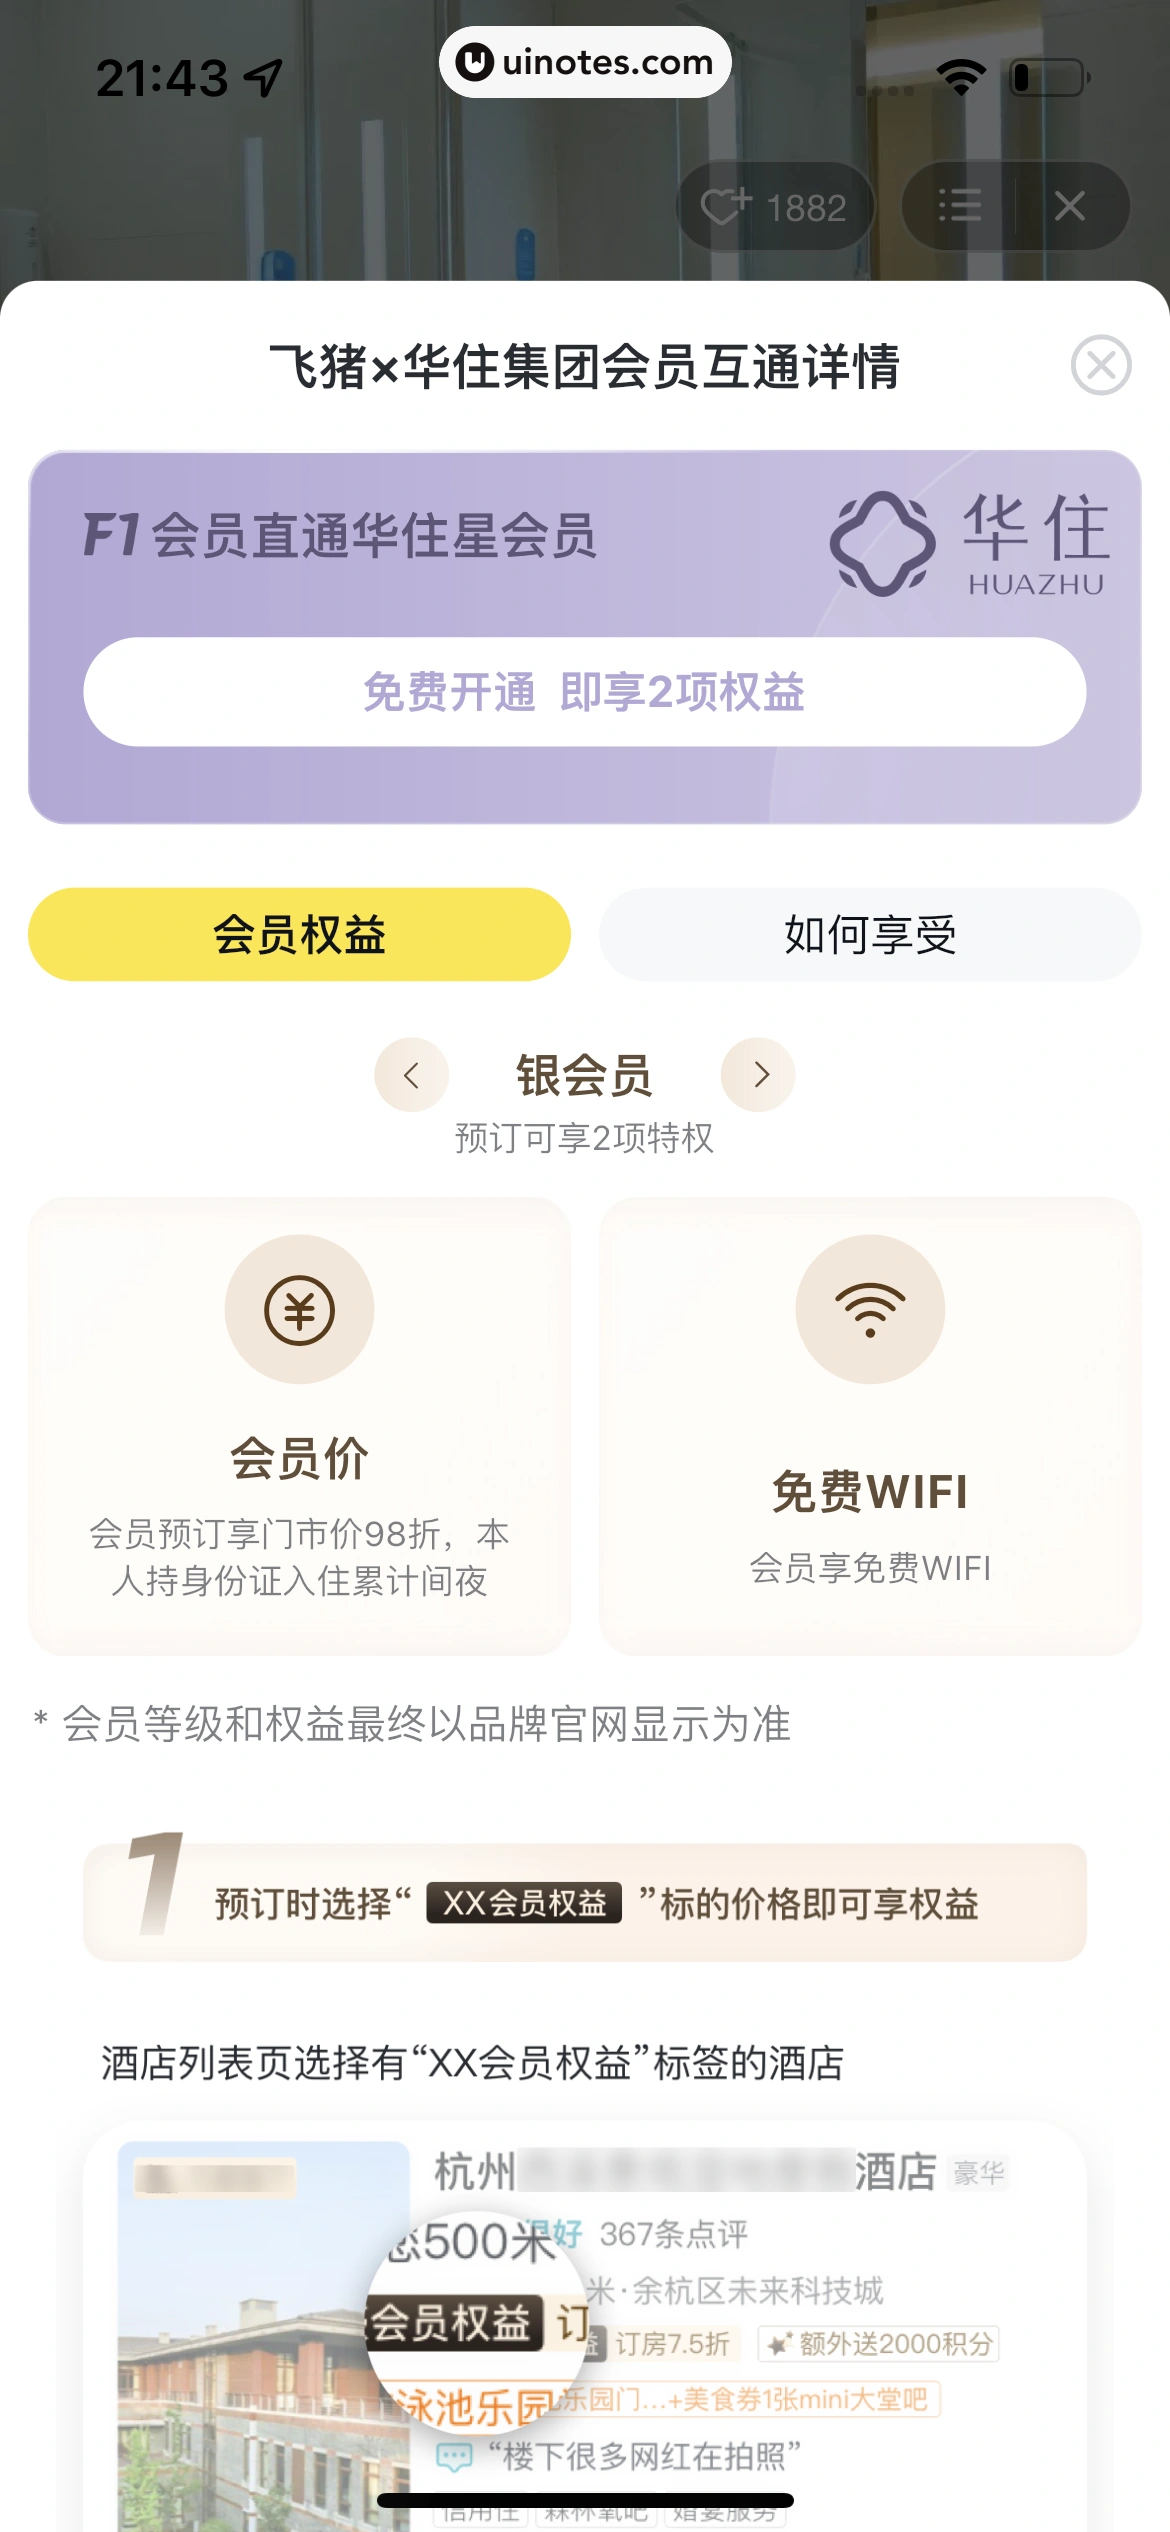 飞猪旅行 App 截图 236 - UI Notes